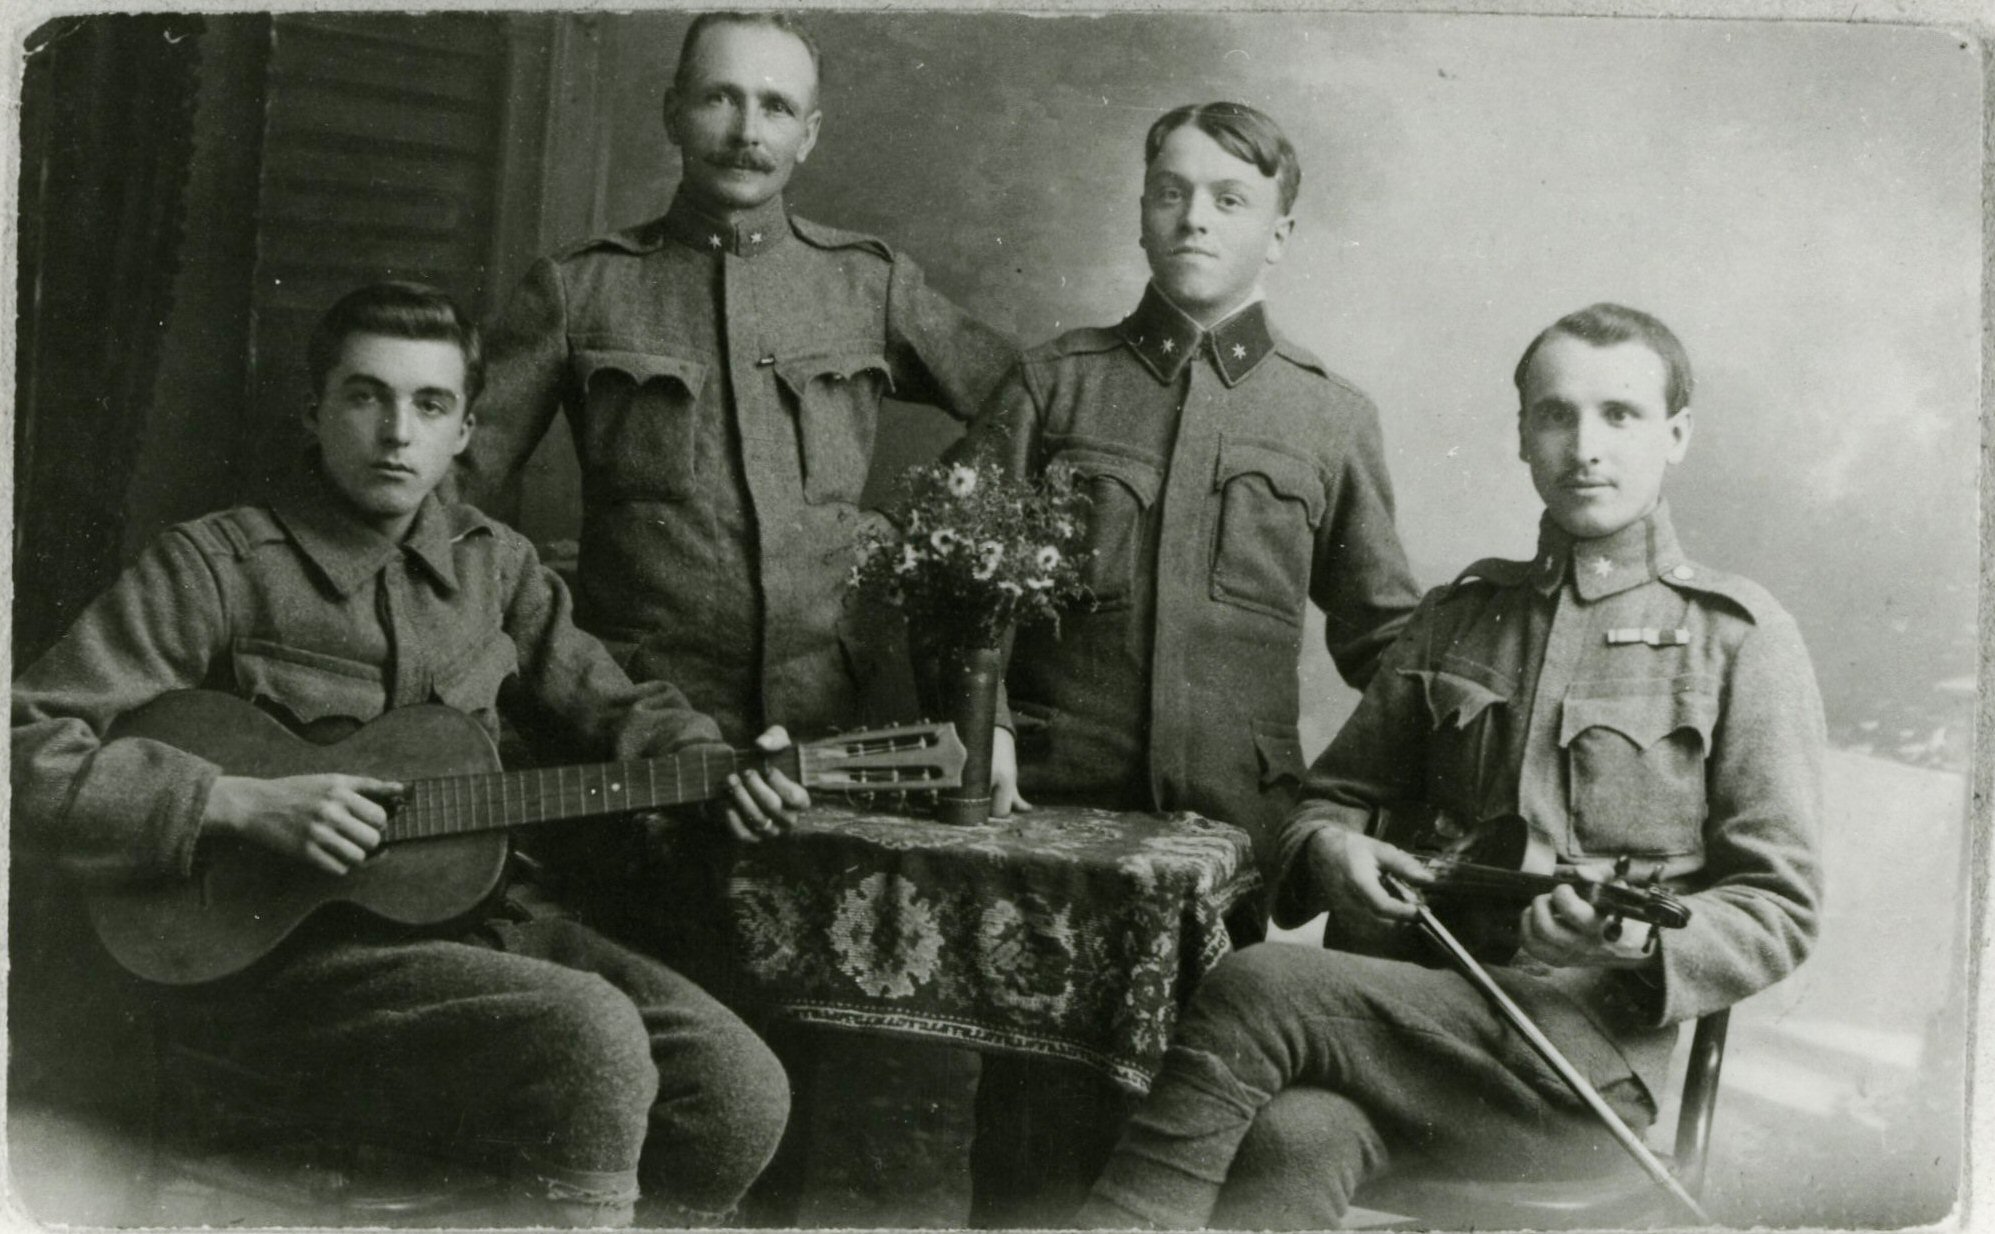 gruppo musicale dell'esercito - F. L. con il violino